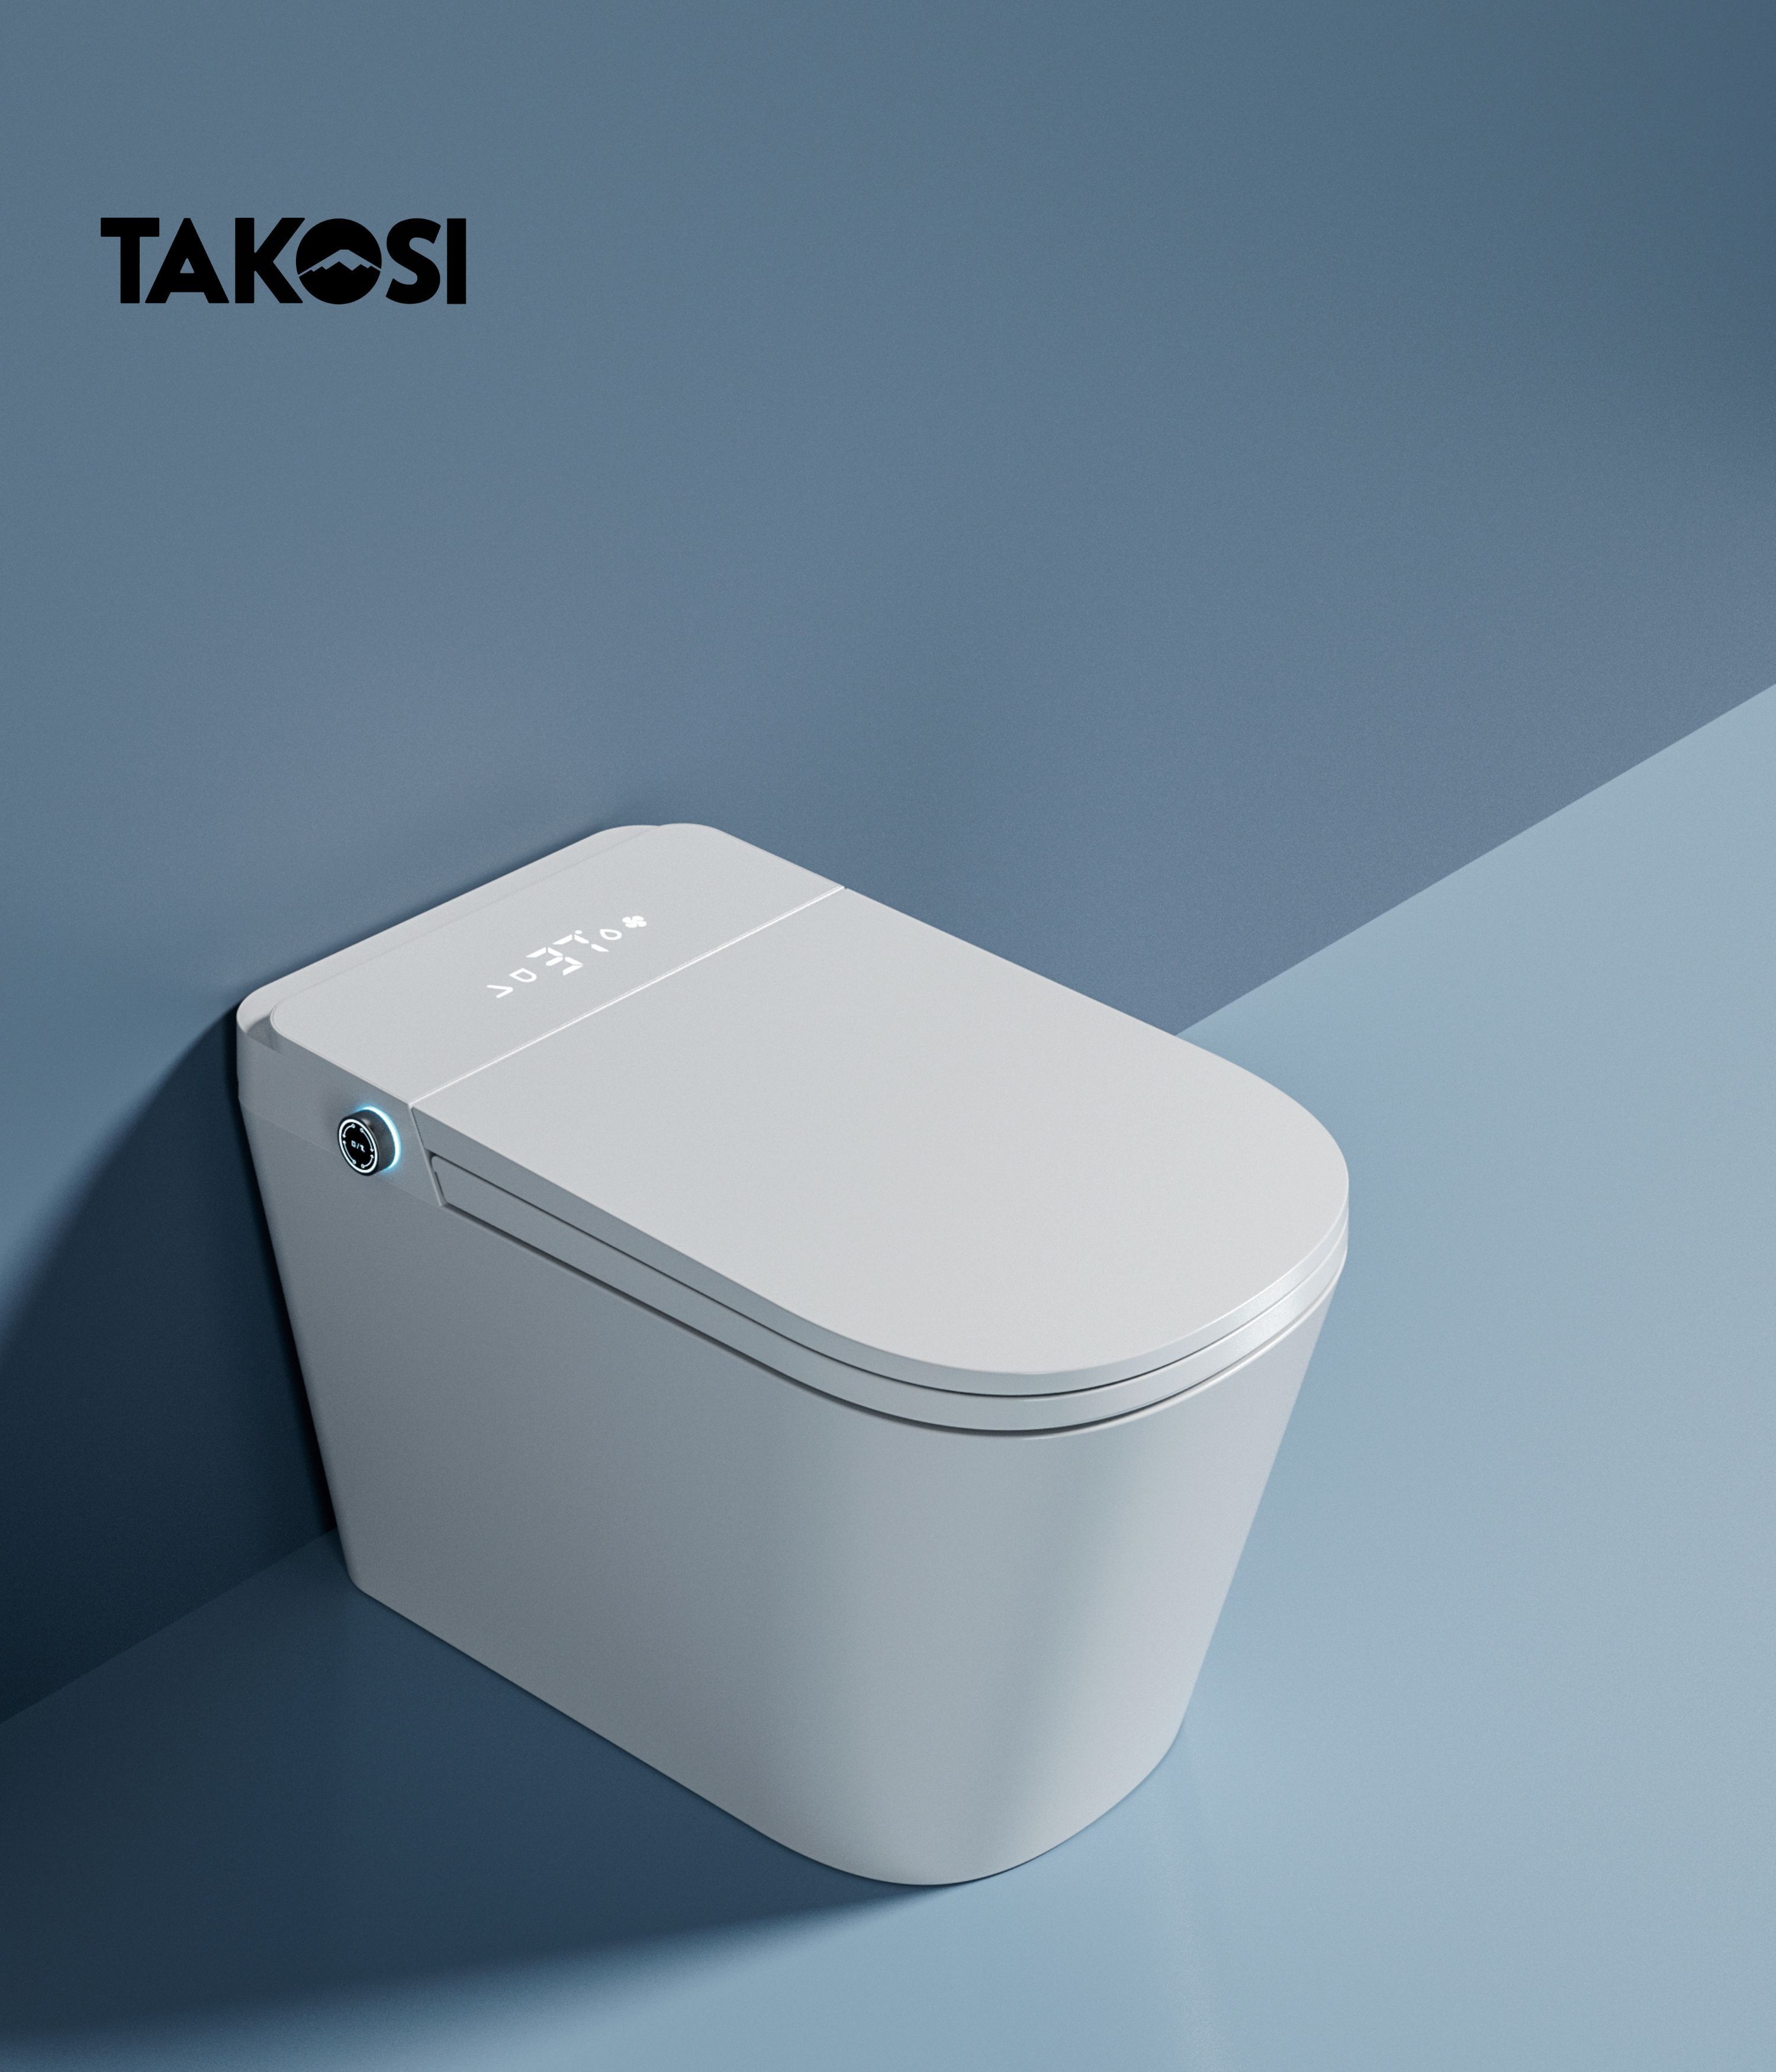 Bồn cầu thông minh xịt nước tự động đa chức năng Takosi TK8600 dùng gia đình, khách sạn- hàng chính hãng bảo hành 10 năm